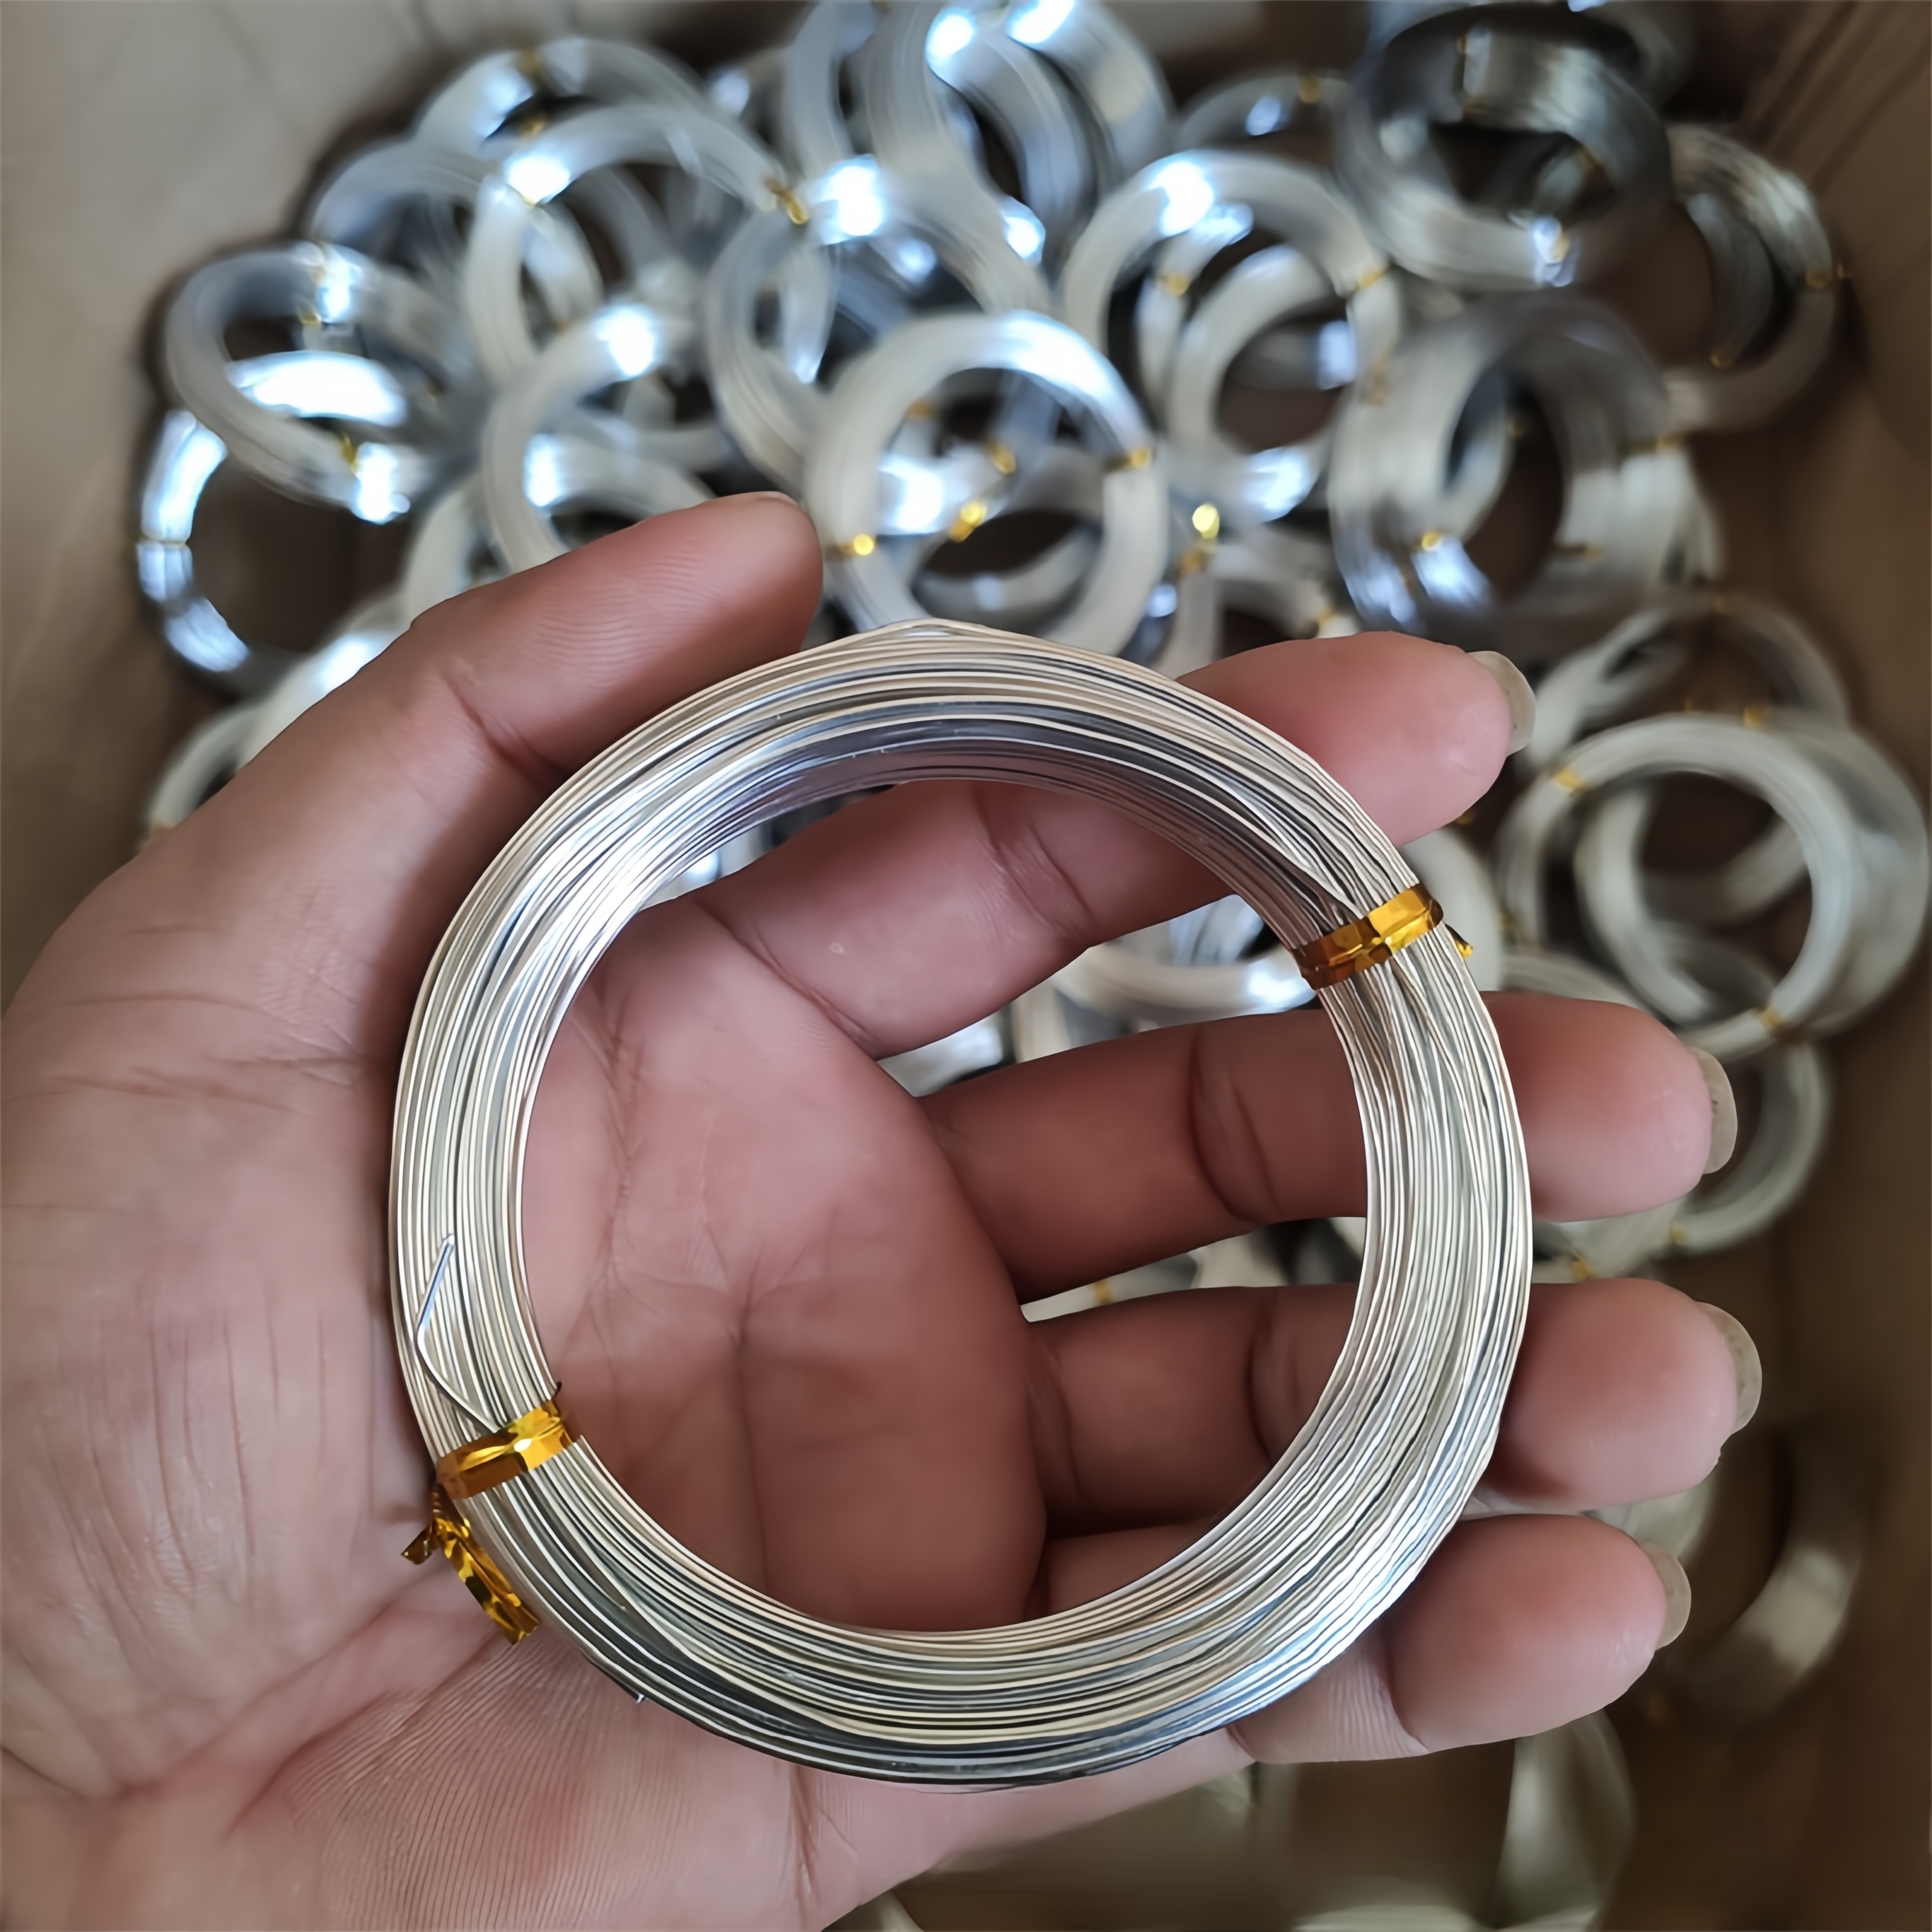 BBTO Alambre de aluminio para manualidades, 4 tamaños (0.039 in, 0.059 in,  0.079 in y 0.098 in de grosor) alambre de metal flexible para esculturas y